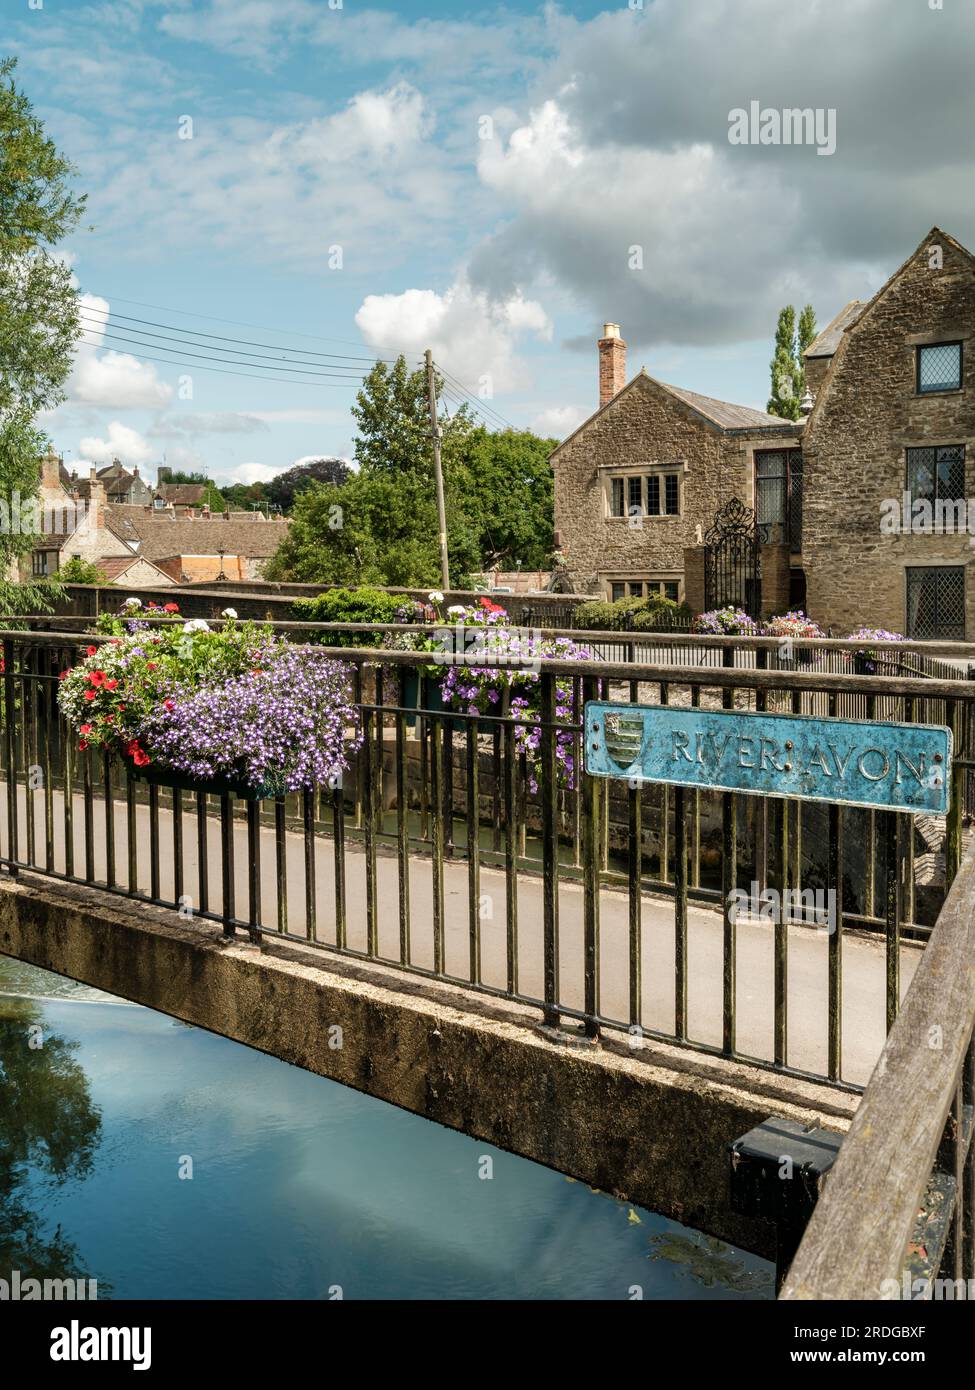 In estate, i fiori adornano la passerella sul fiume Avon che conduce alla storica cittadina collinare di Malmesbury nel Wiltshire. Foto Stock